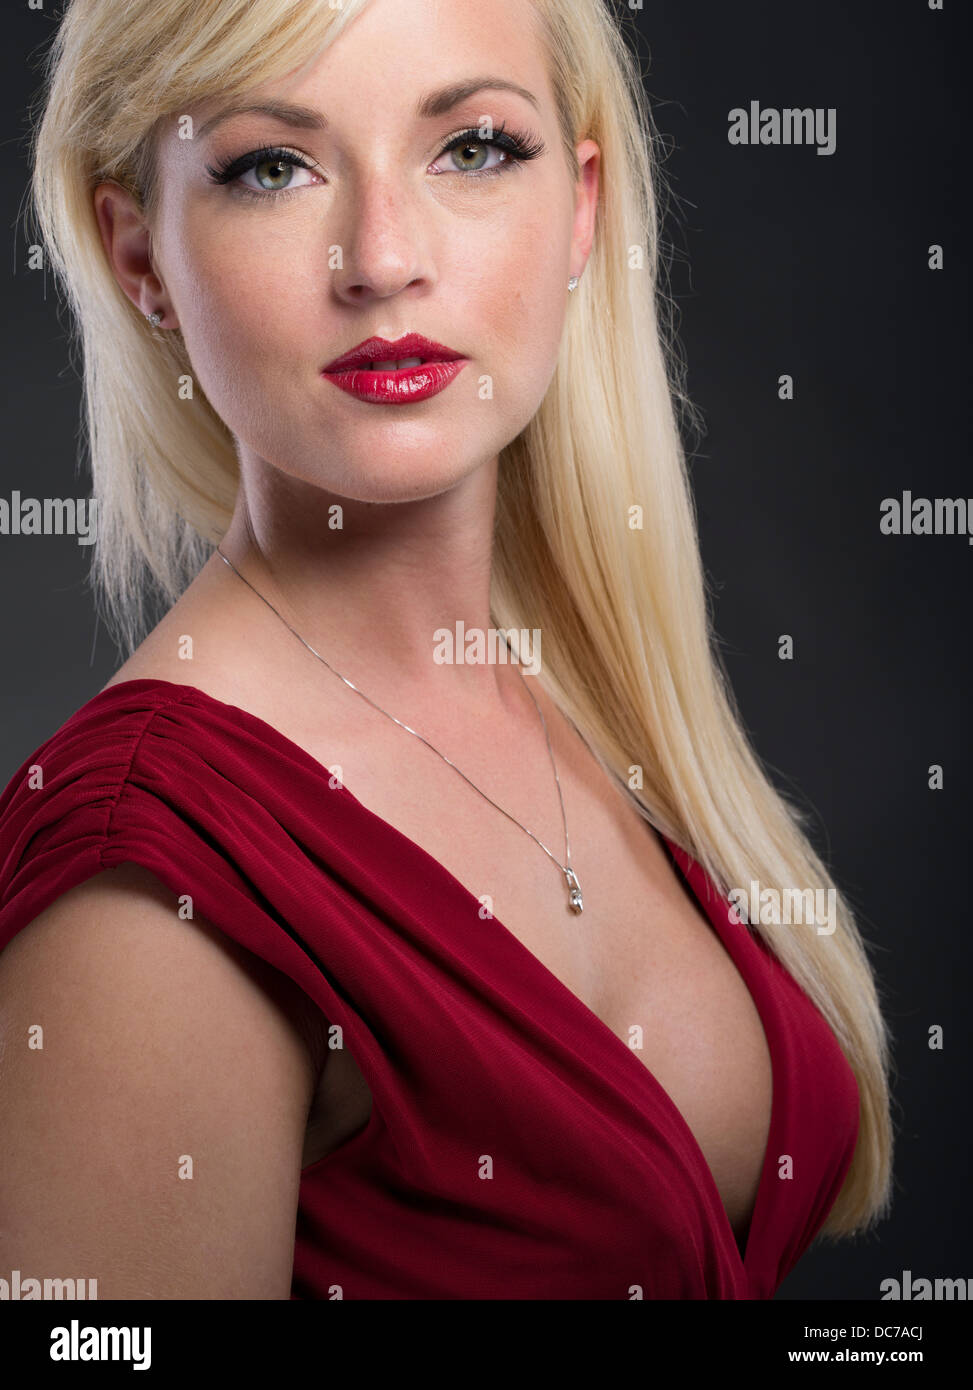 Belle blonde woman dans la vingtaine portant robe rouge profond coupe-bas robe formelle Banque D'Images